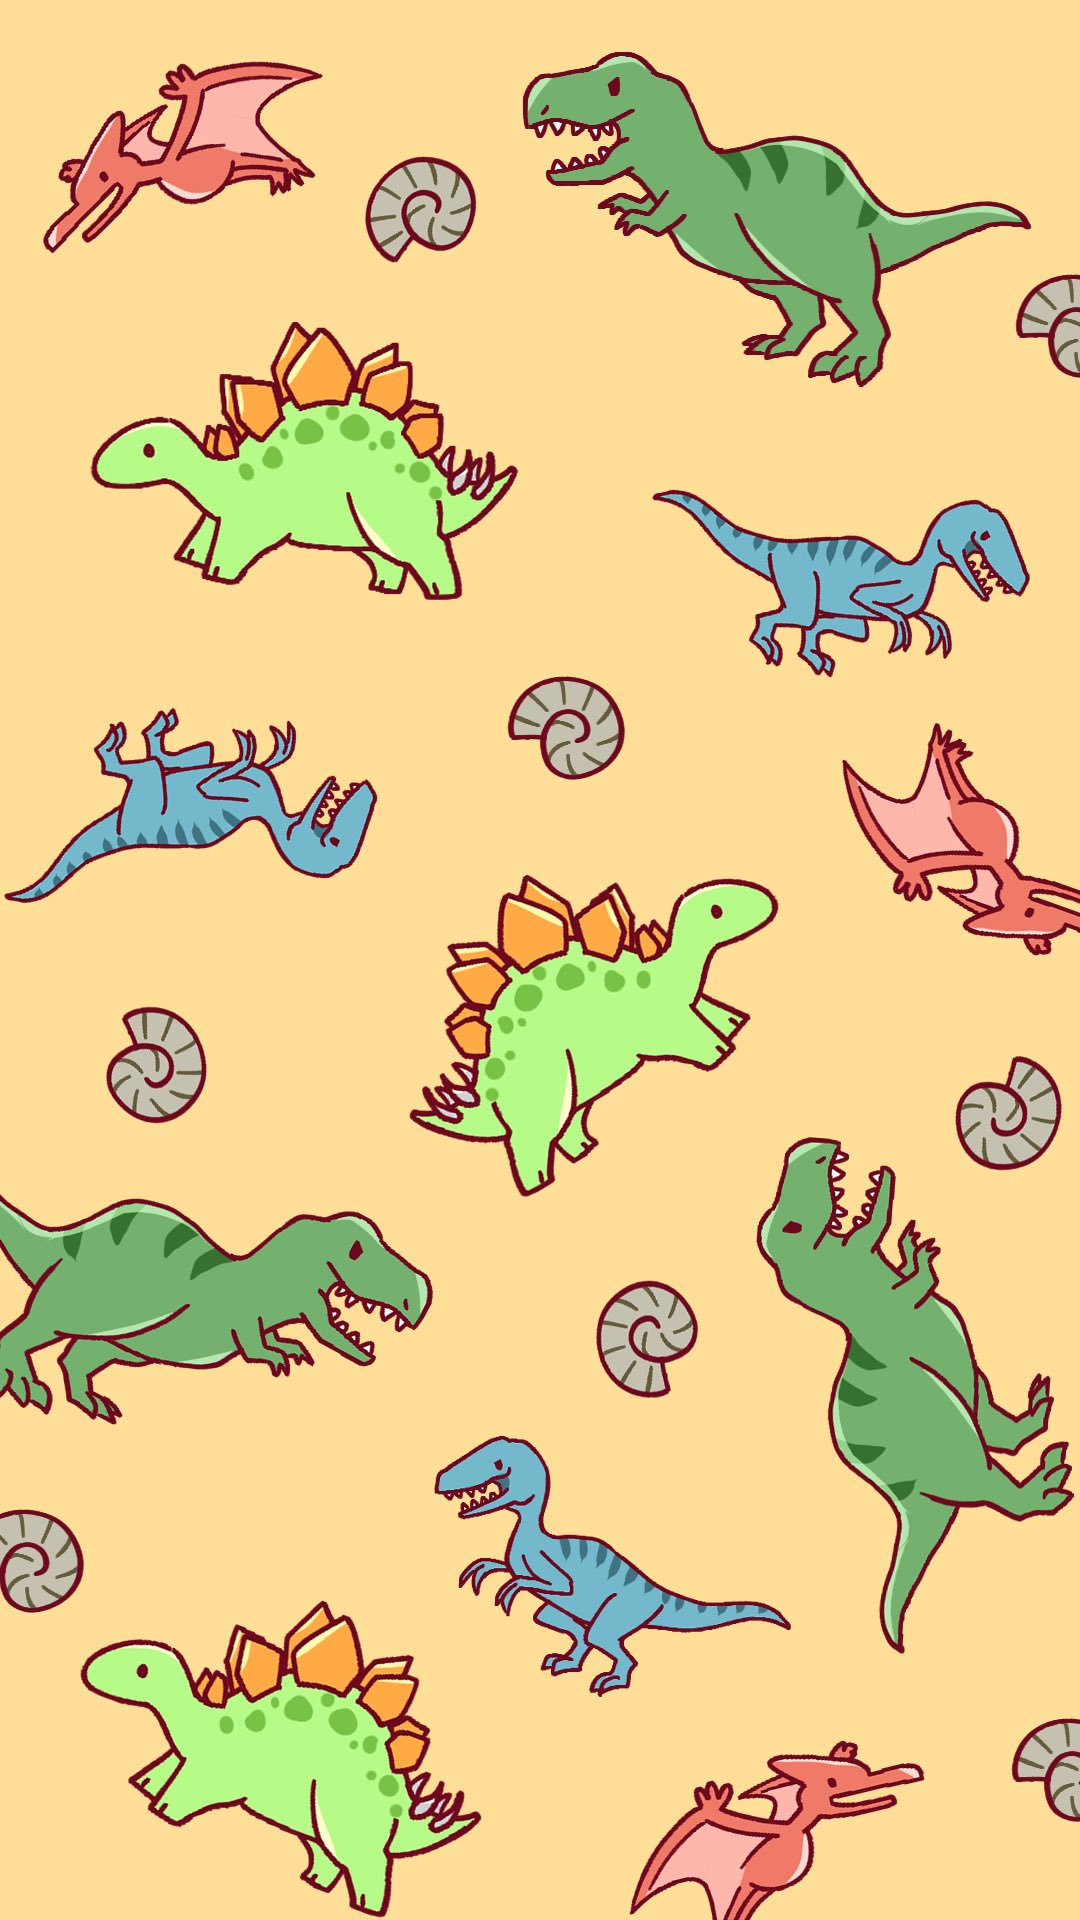 Twitter 上的 咲牙めぶ 昨日ジュラシックパークを見たので 恐竜くんがいっぱいな壁紙風イラスト描いてみました 何度見てもハラハラして面白いですね T Co Q3xiypmyos Twitter